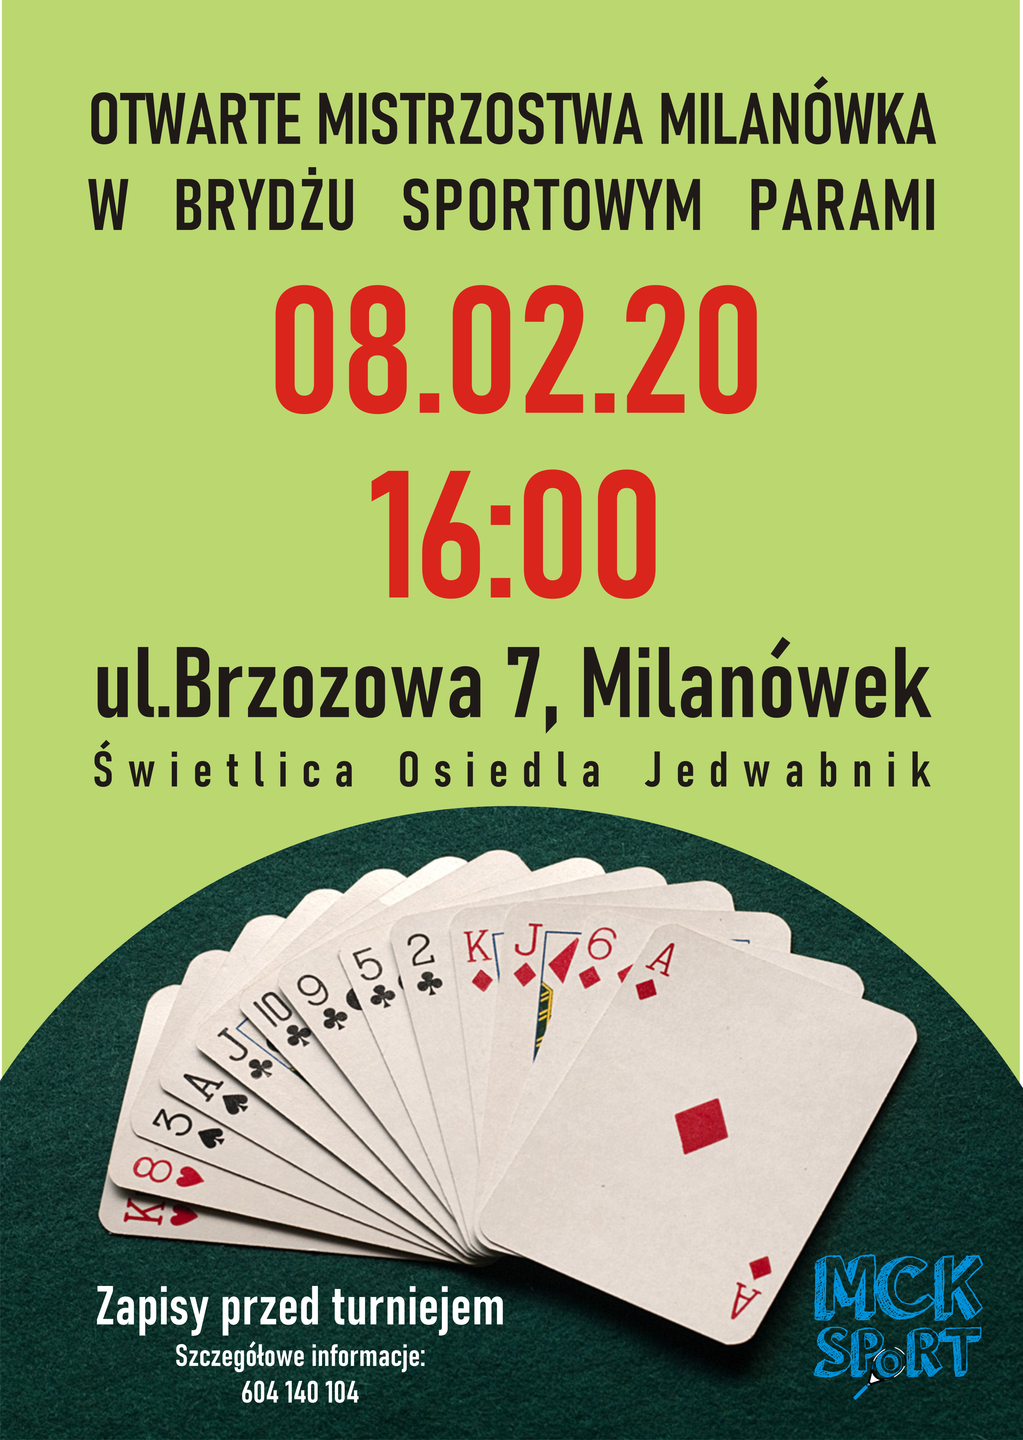 Plakat promujący Otwarte Mistrzostwa Milanówka w Brydżu Sportowym Parami